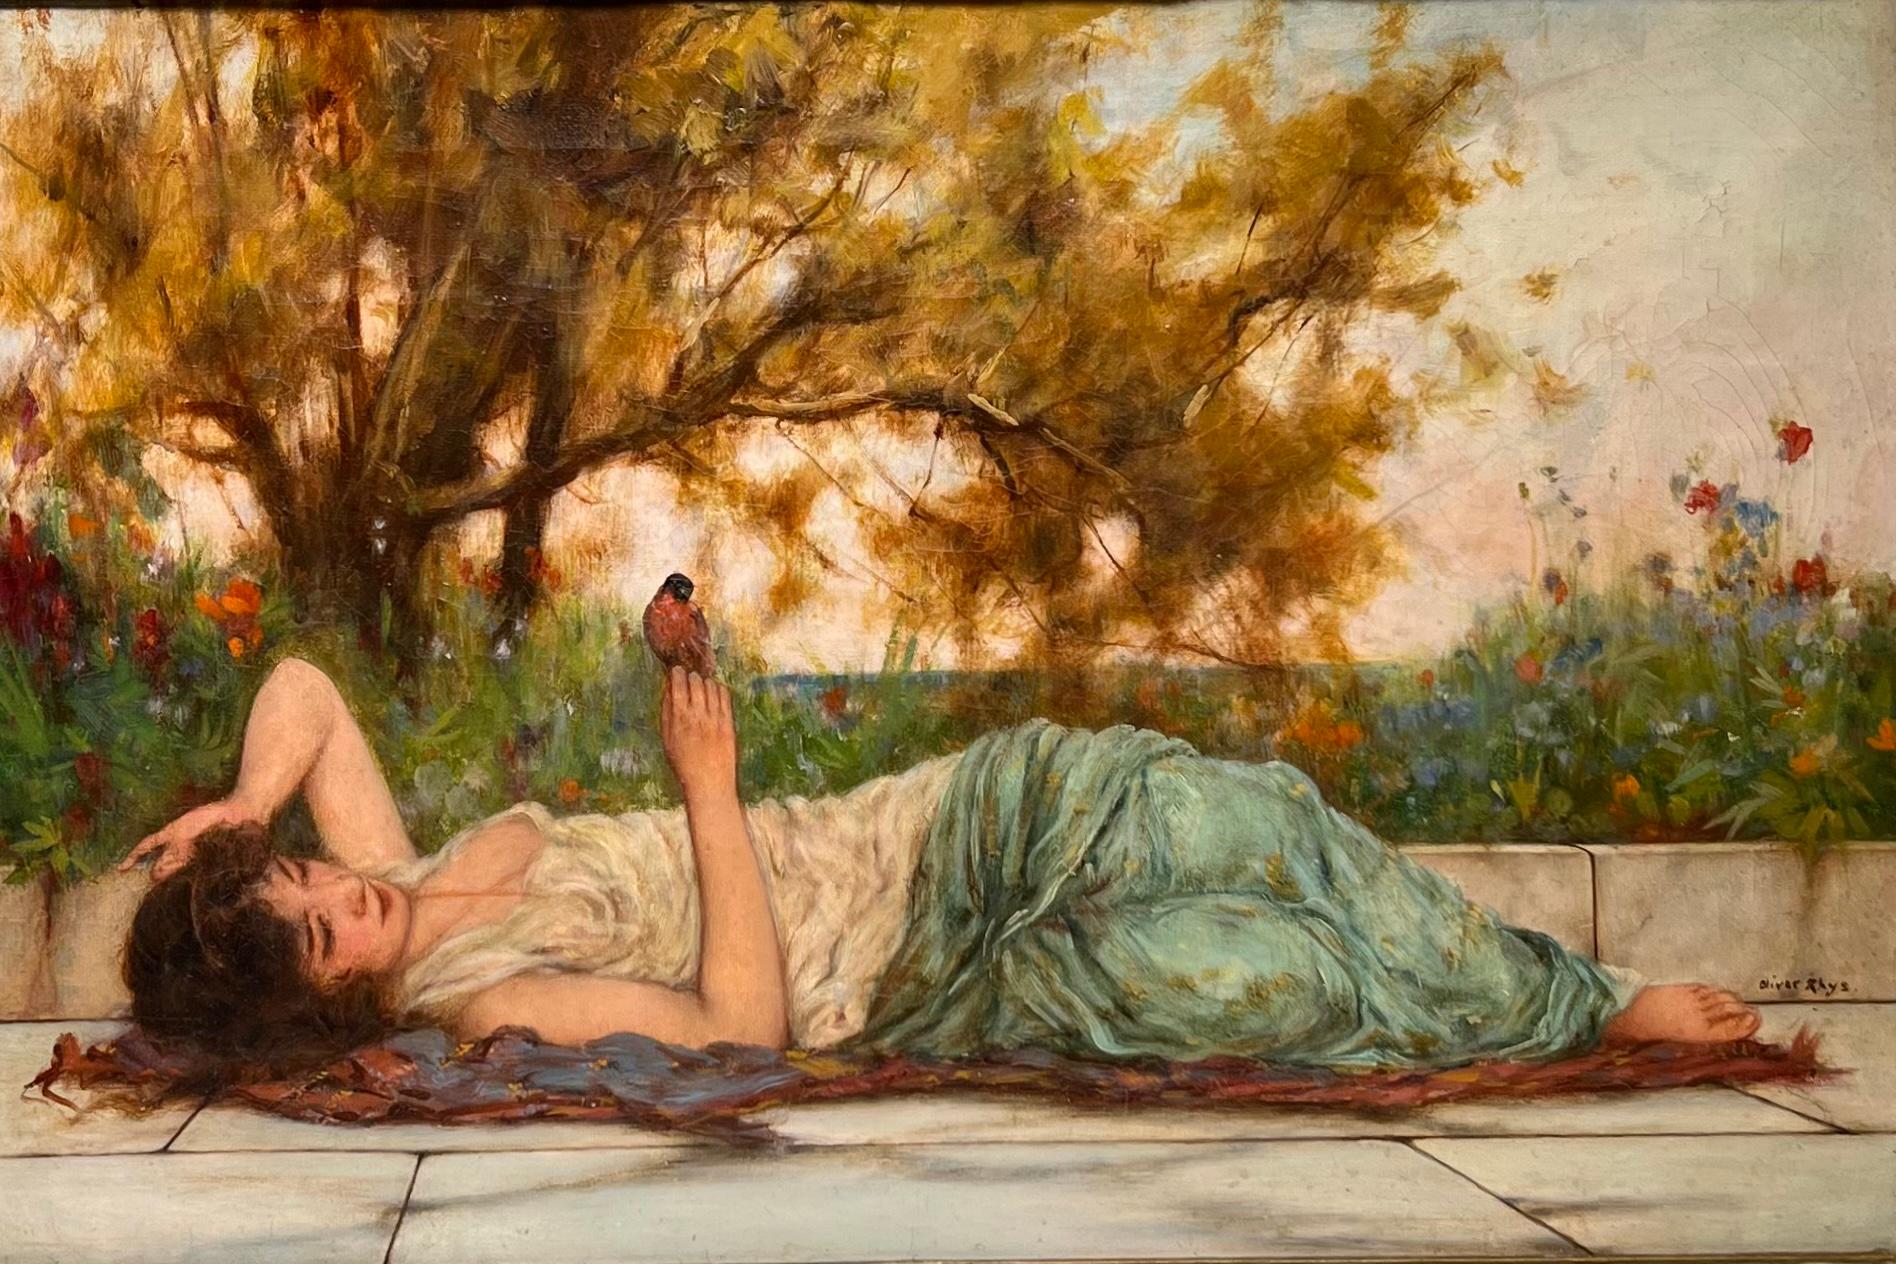 Oliver Rhys (1876-1893) est un important peintre académique anglais du XIXe siècle, de style préraphaélique, connu pour ses peintures de femmes grecques.

Ses peintures se sont vendues à Sotheby's et Christie's bien au-delà de 30 000 dollars.

Le